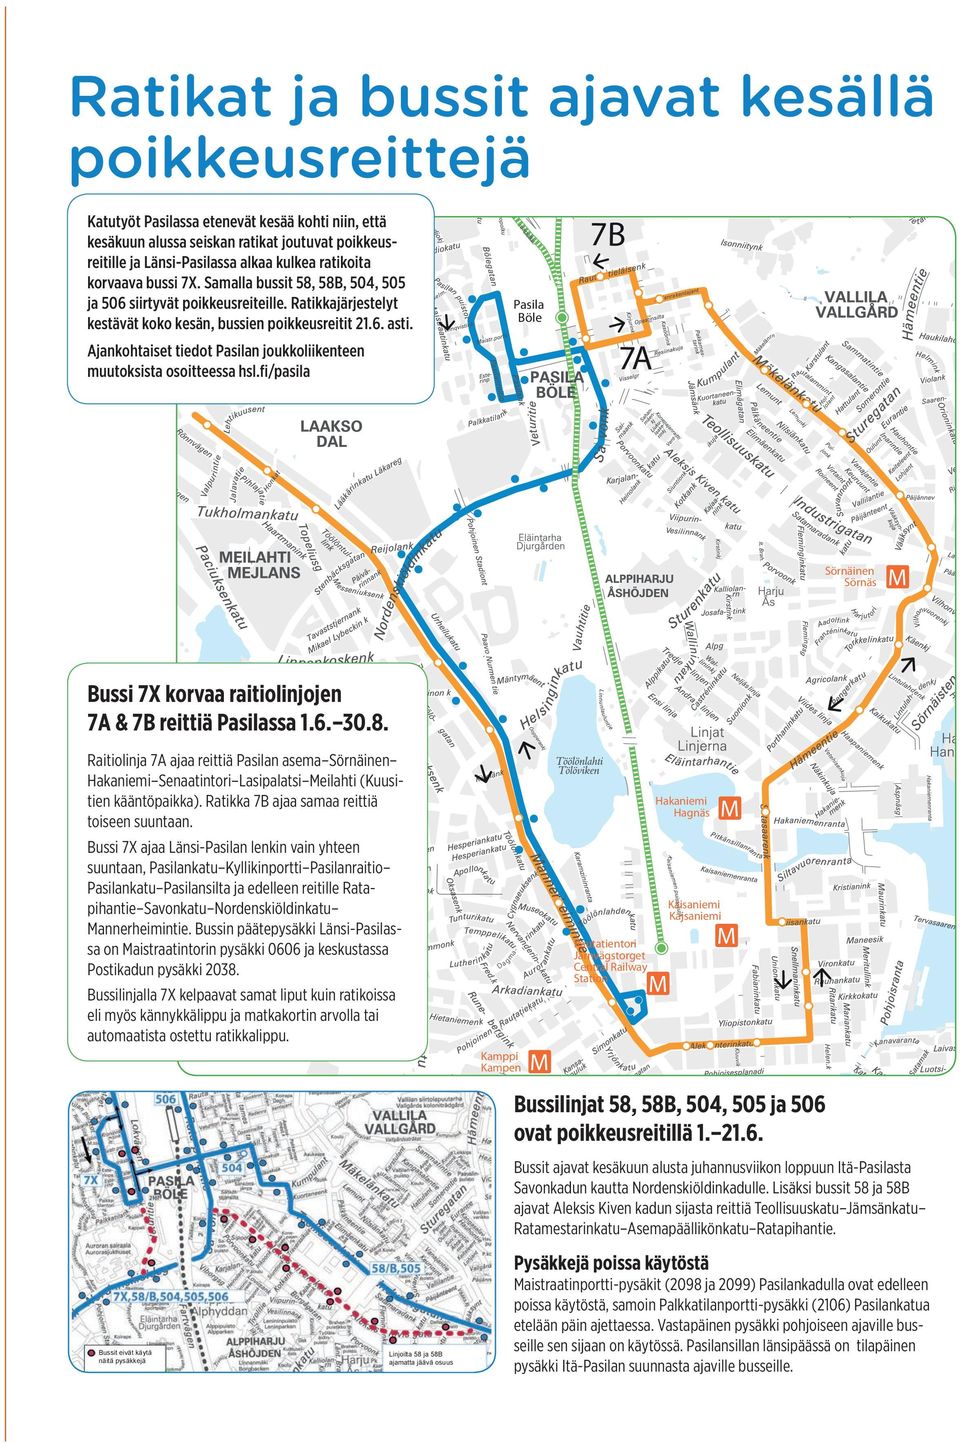 7B Pasila Böle 7A Ajankohtaiset tiedot Pasilan joukkoliikenteen muutoksista osoitteessa hsl.fi/pasila Sörnäinen Sörnäs Kalasa t Fiskha m Bussi 7X korvaa raitiolinjojen 7A & 7B reittiä Pasilassa 1.6.